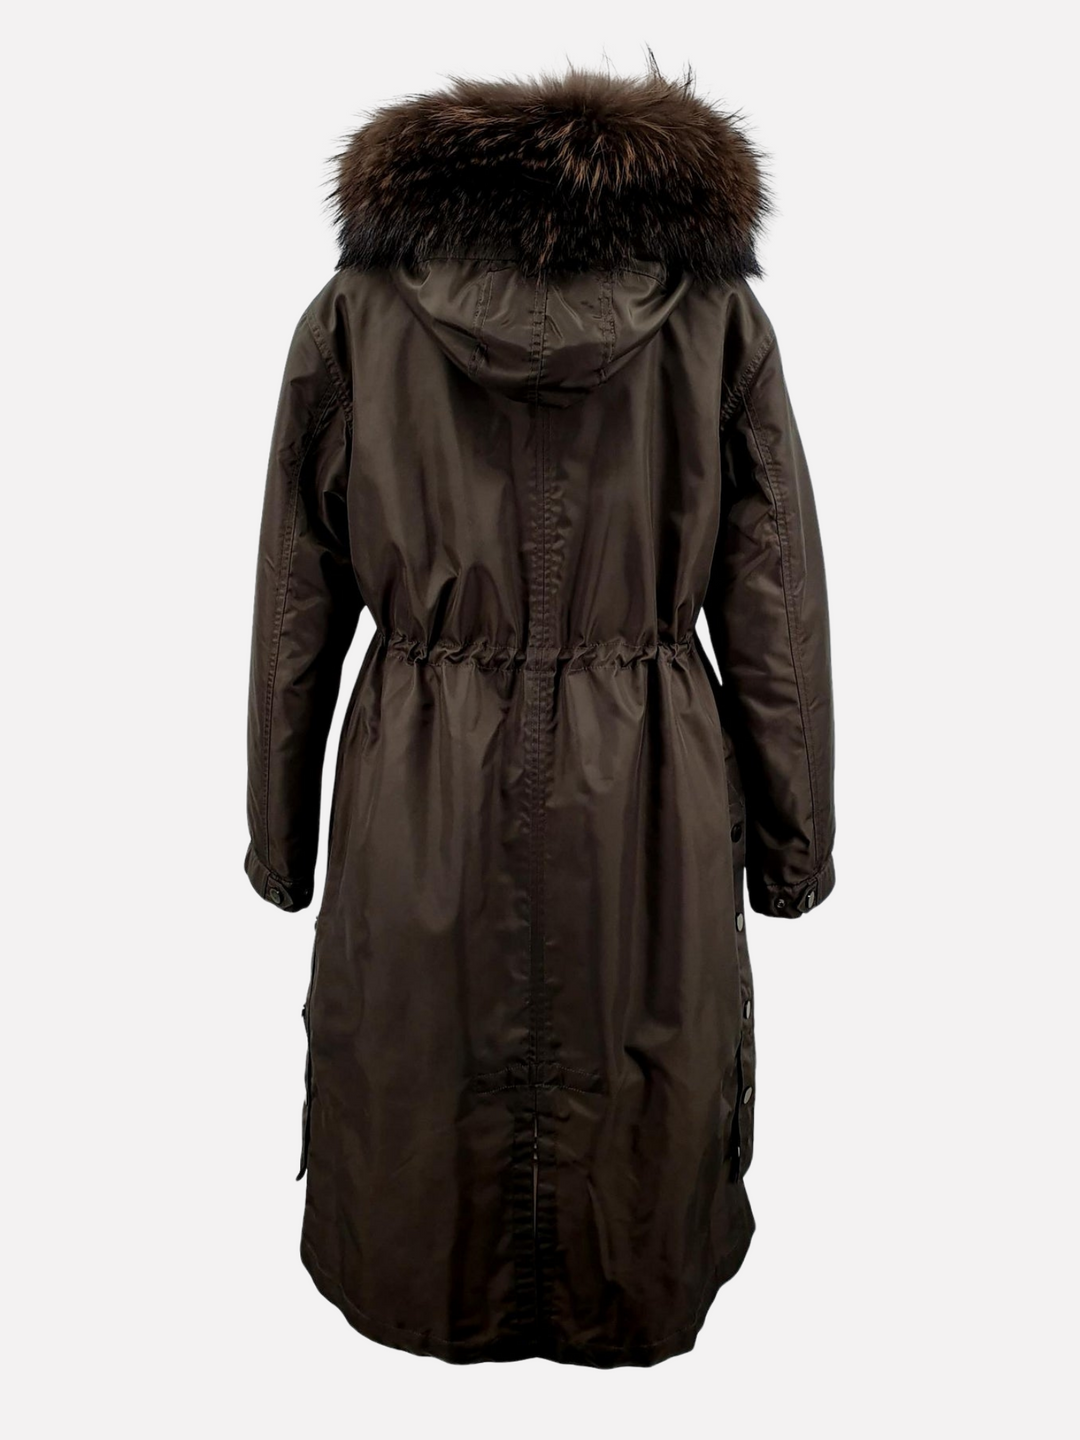 Parka jakke model Calgary 108 cm. - Kvinde med ægte pels foer